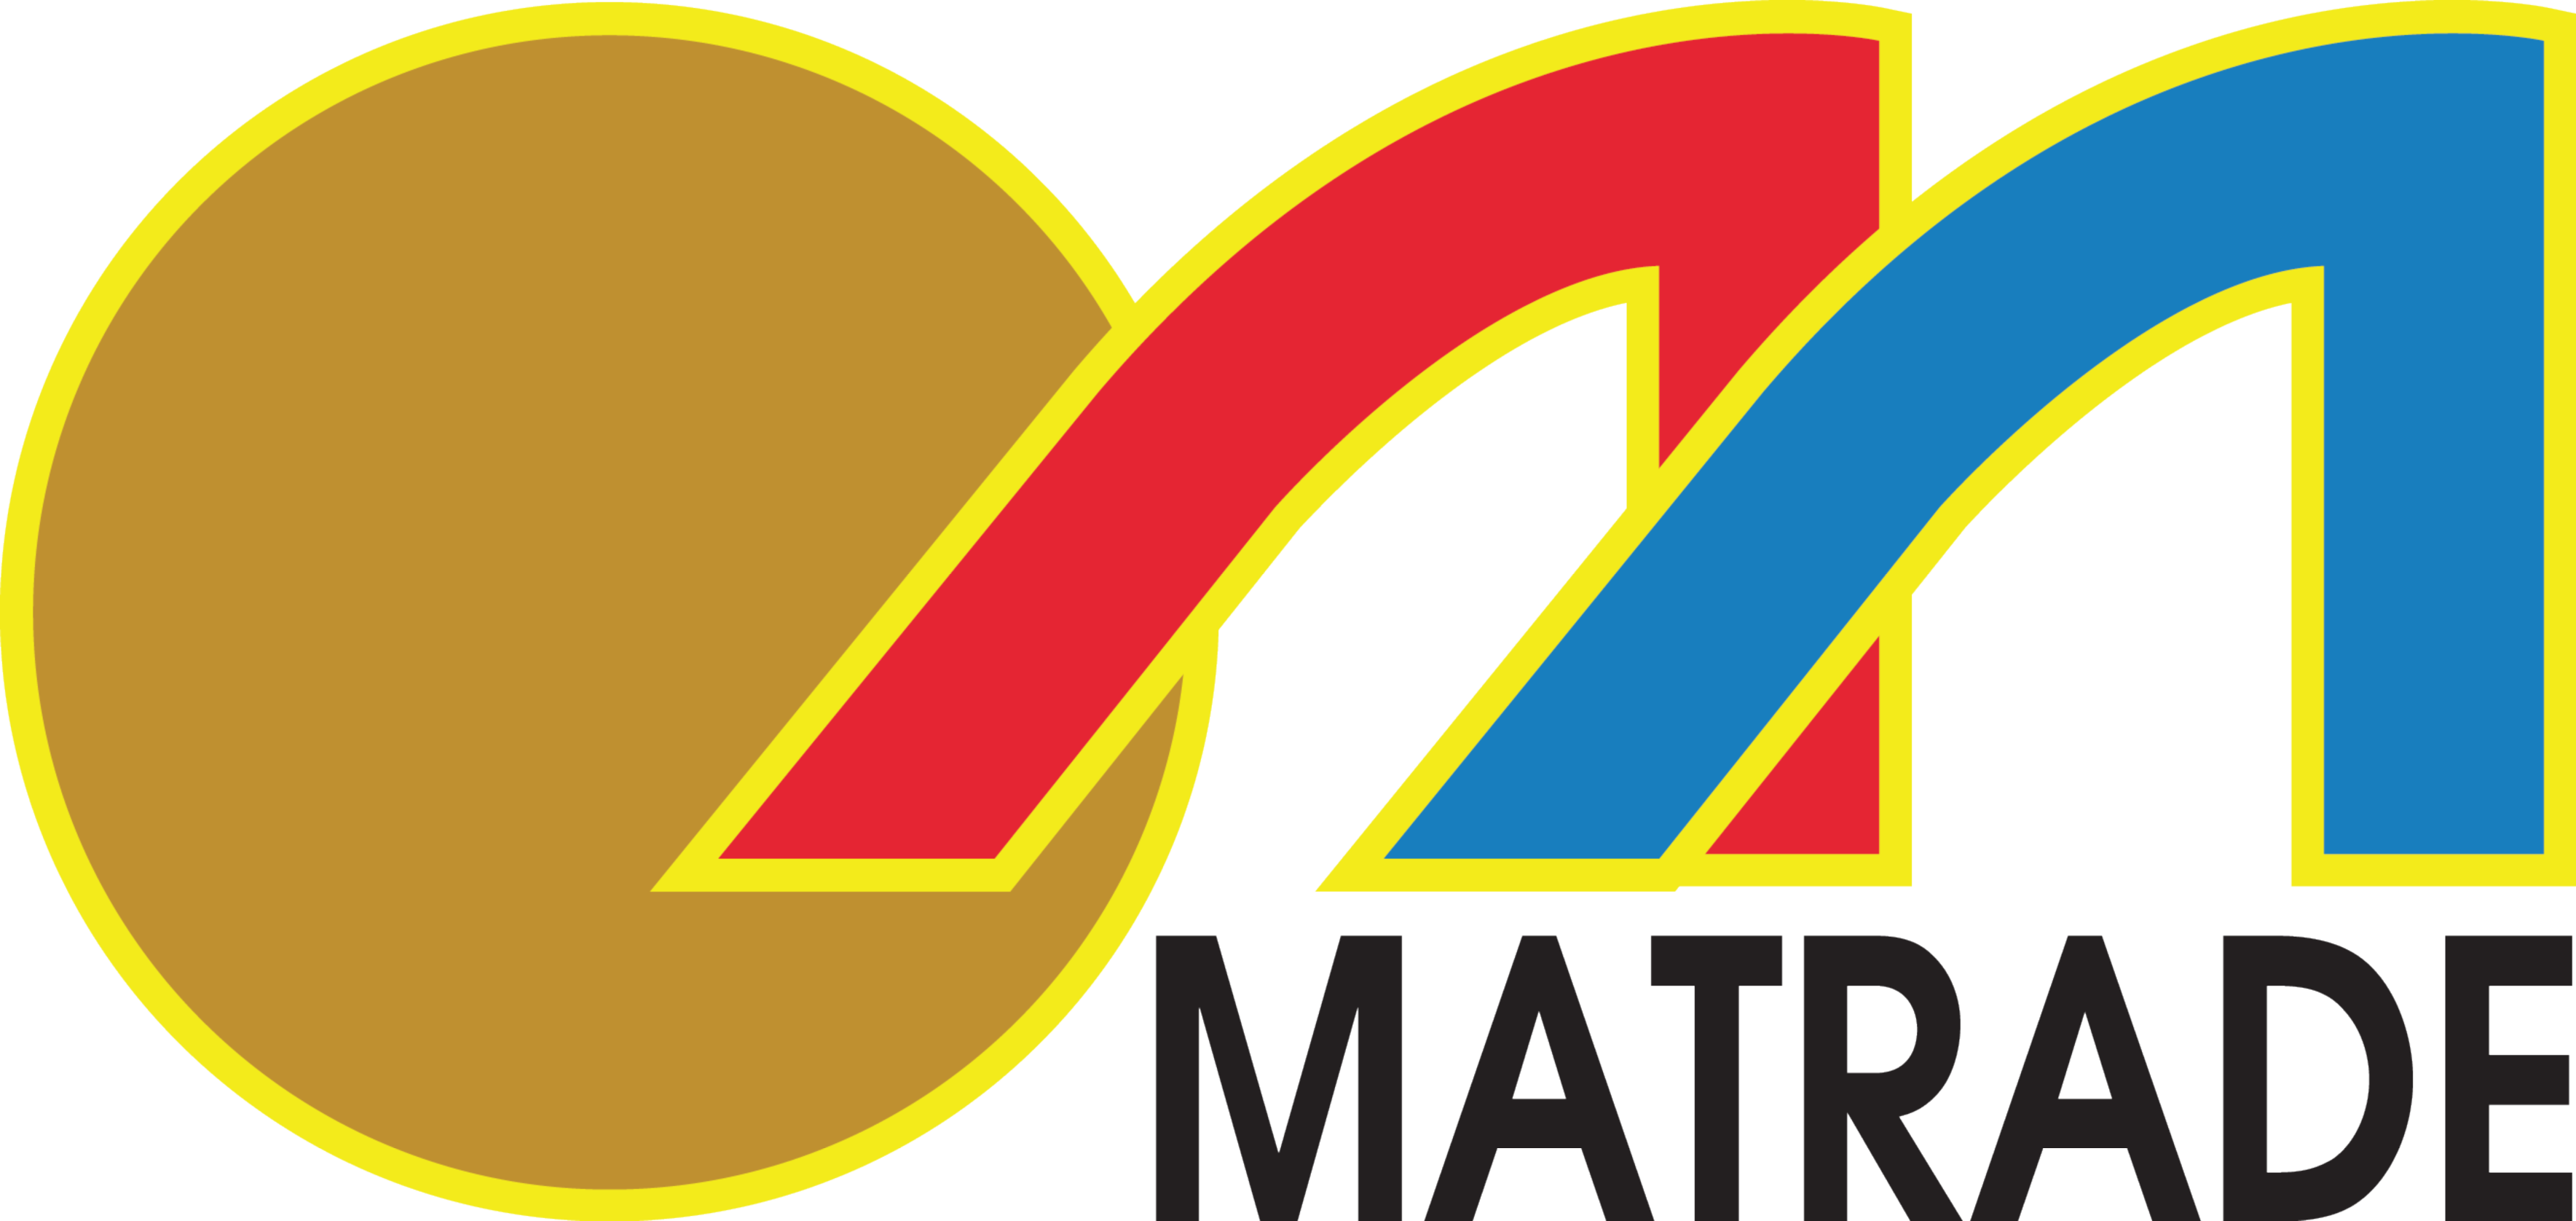 MATRADE - Malaysia External Trade Develo